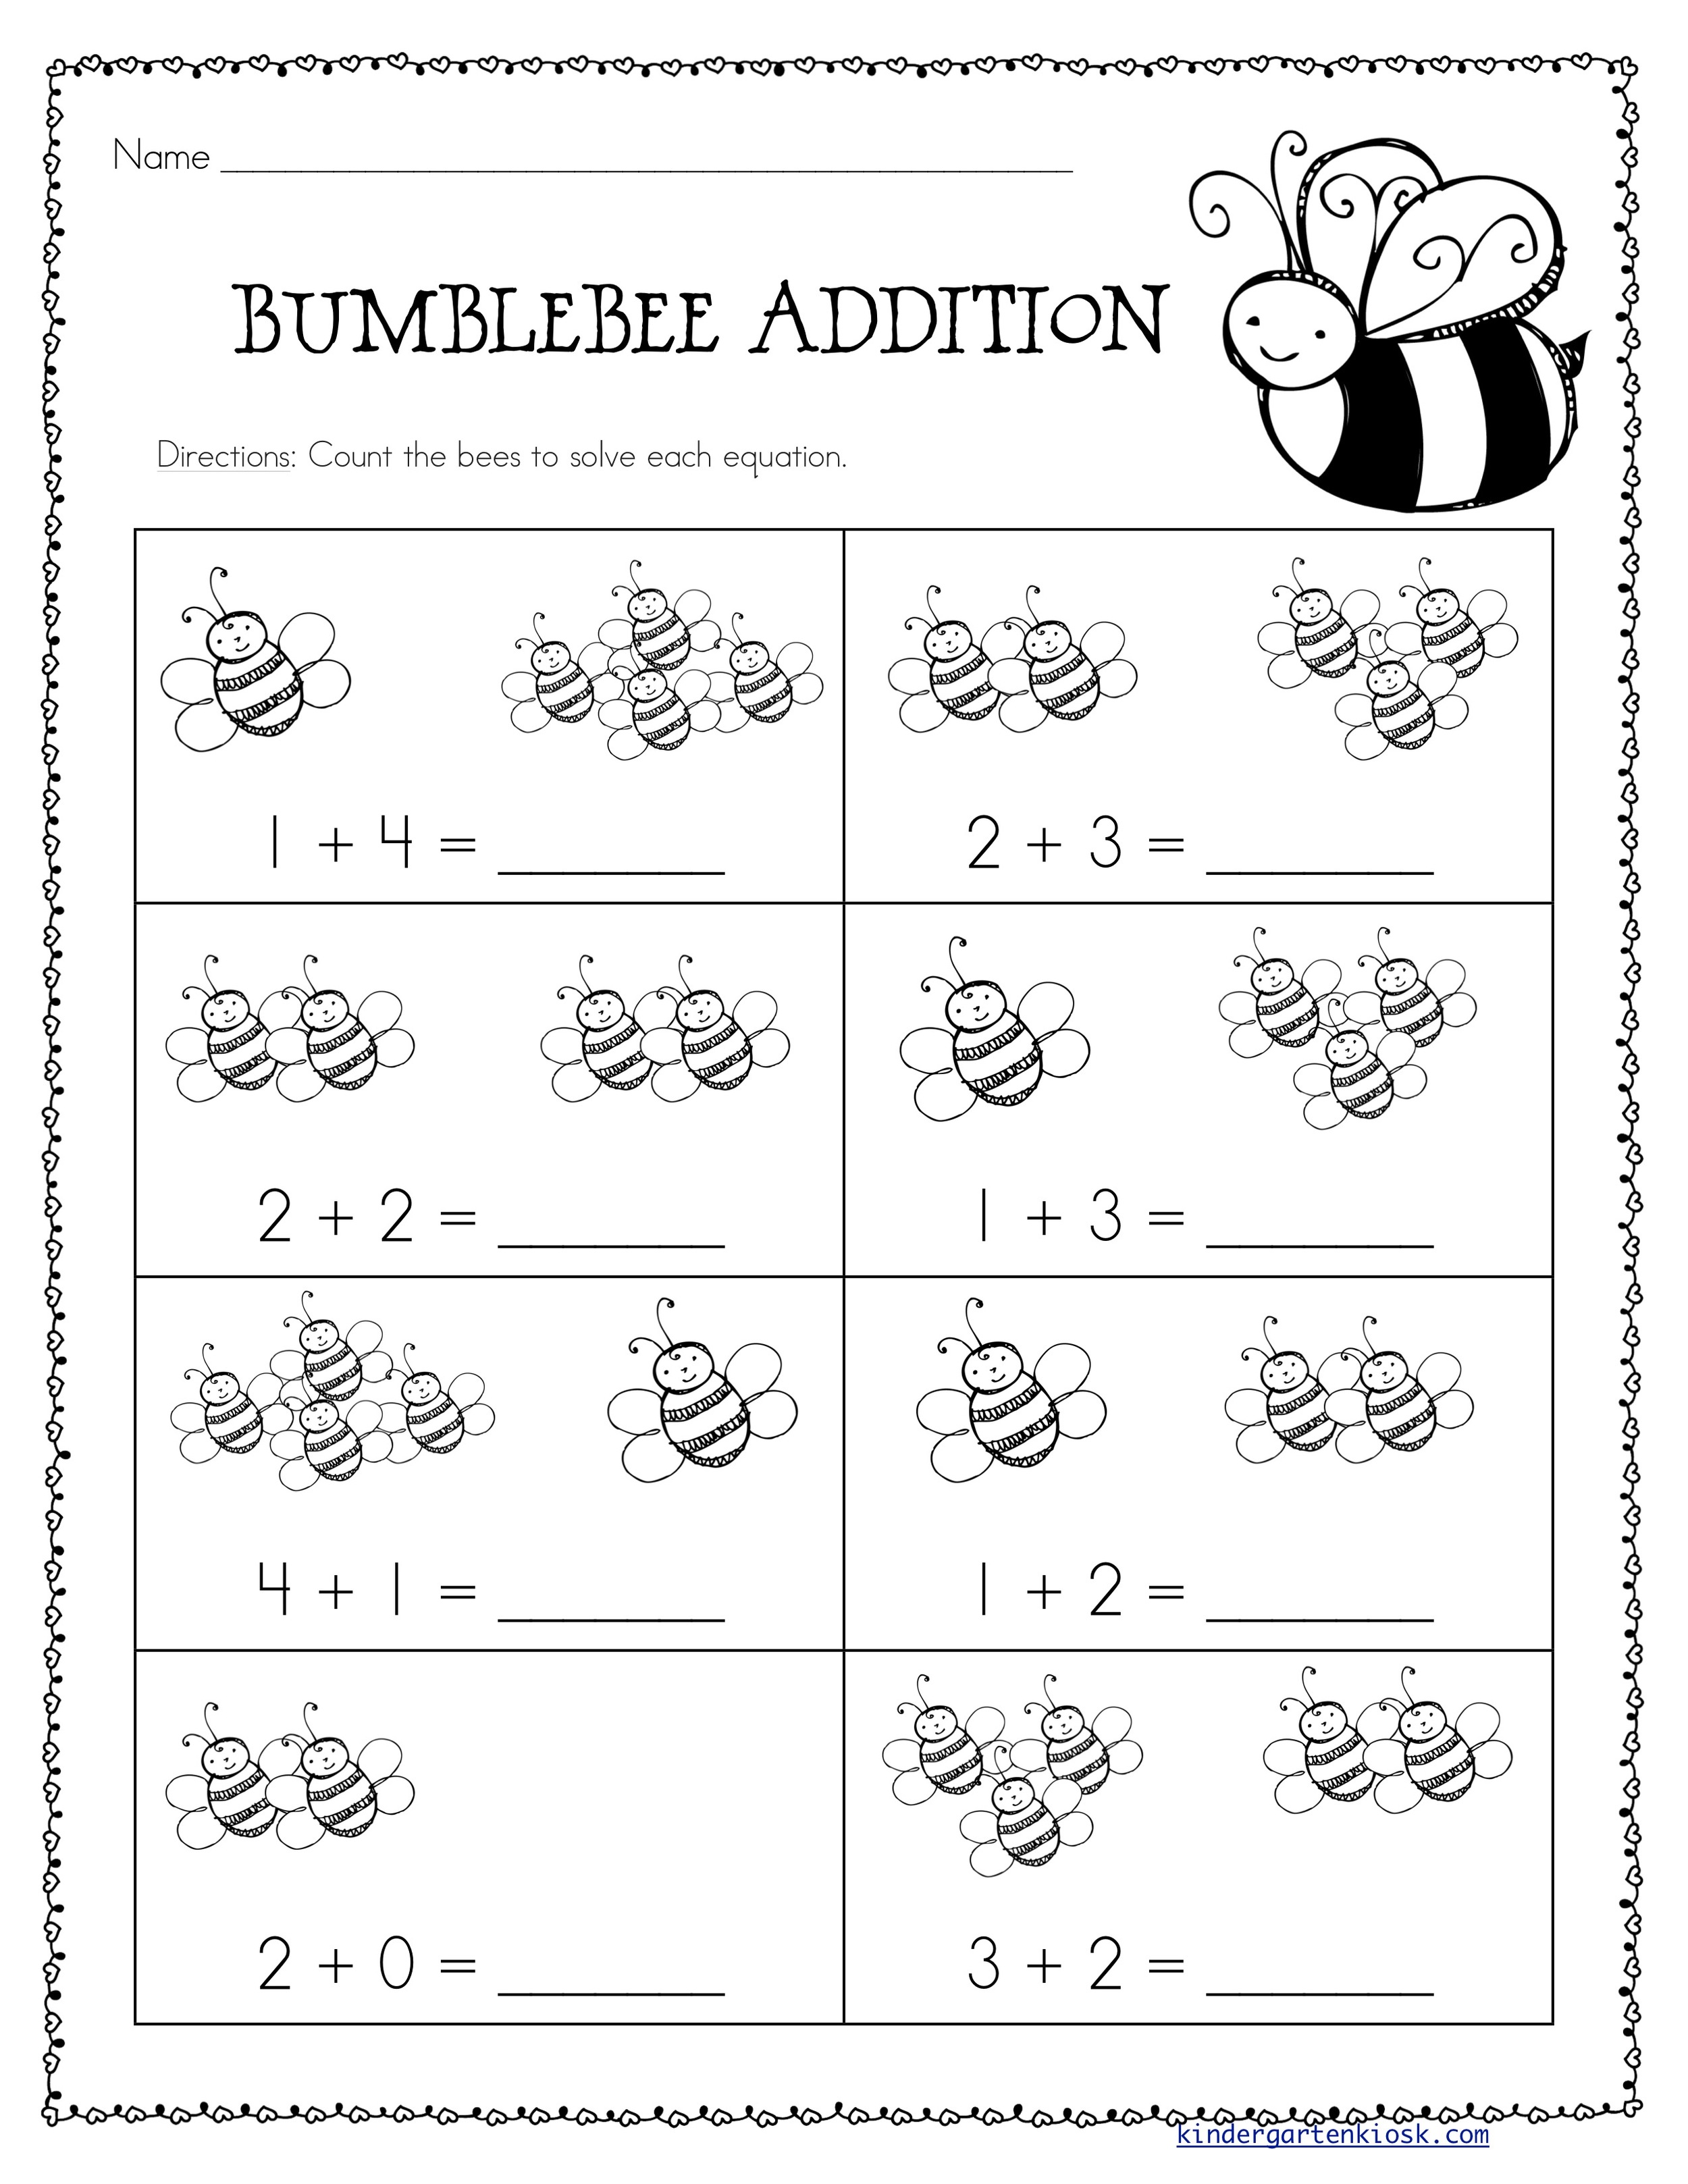 addition-worksheets-spring-kindergarten-kiosk